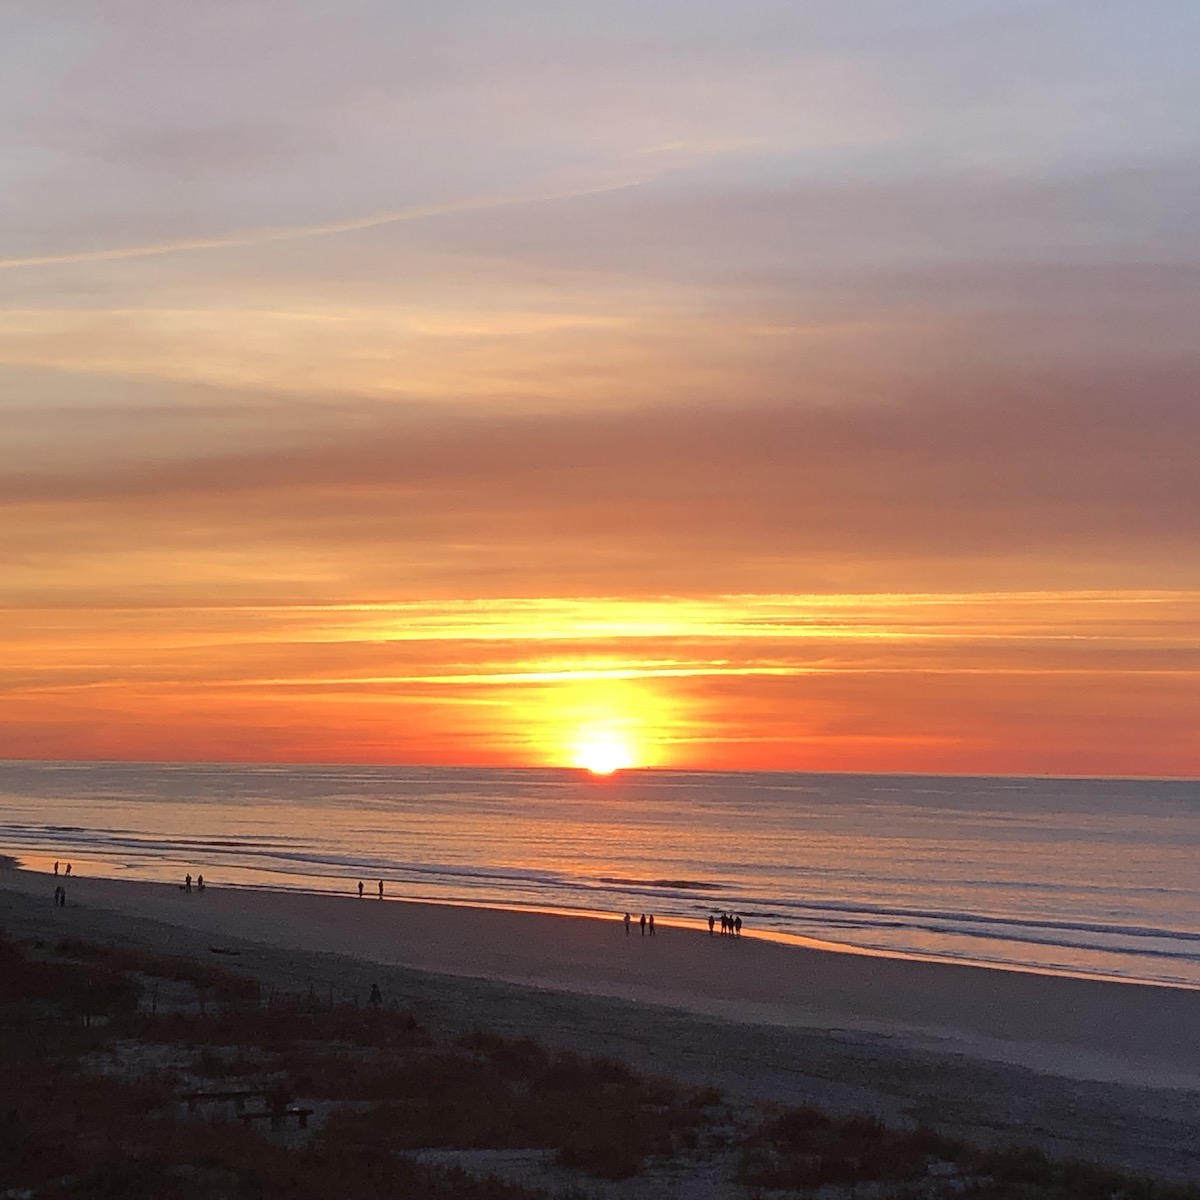 Sunrise in Folly Beach, South Carolina.